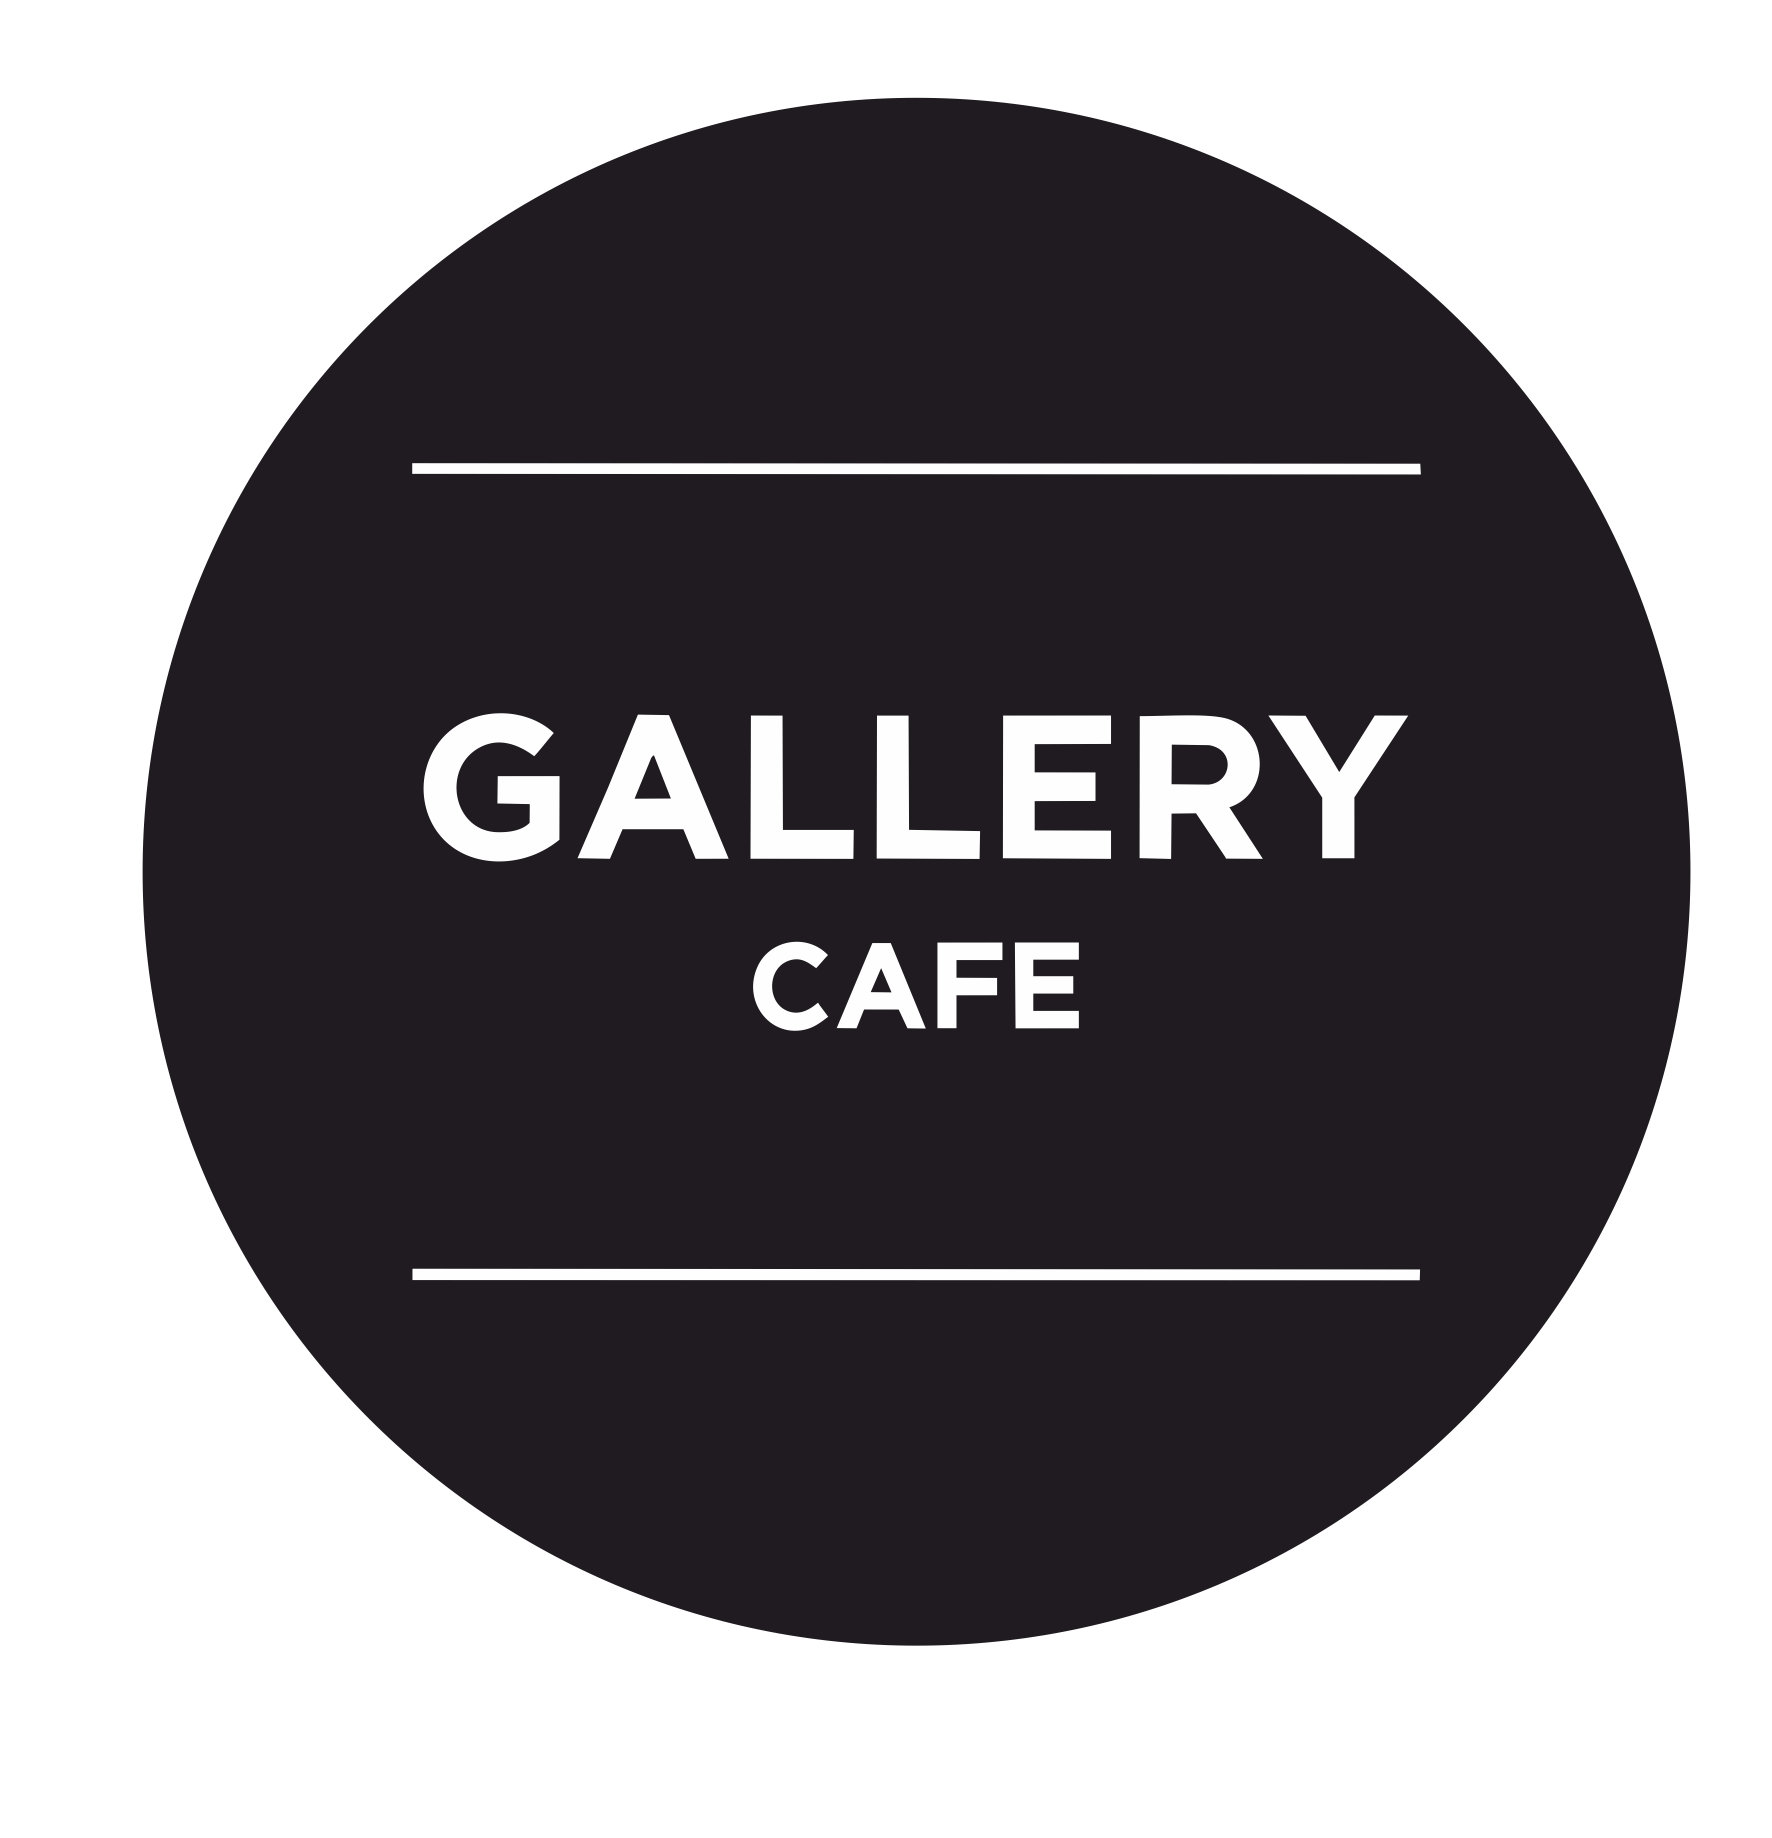 24/7 Gallery Café